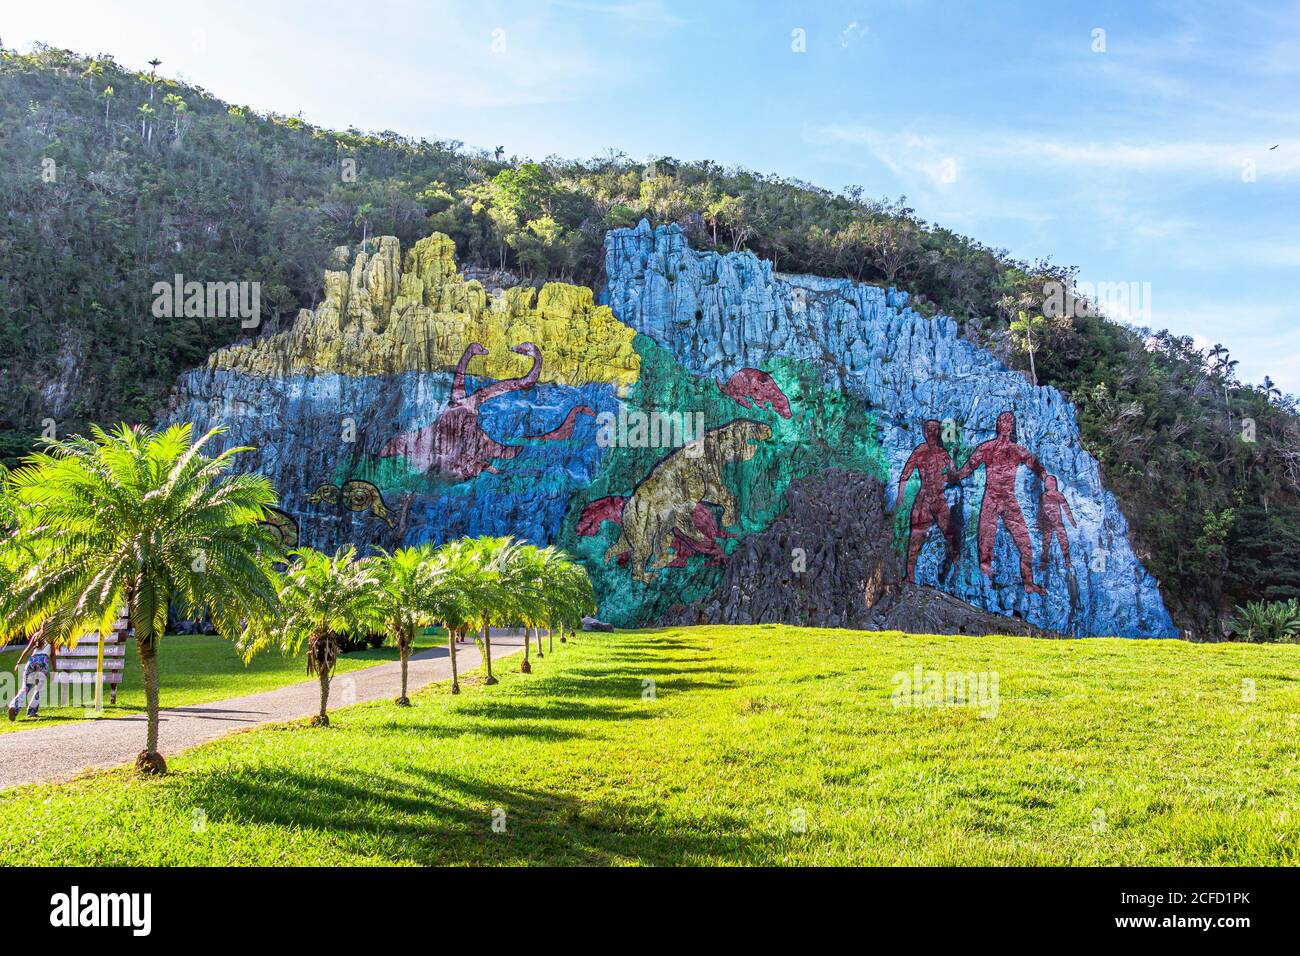 'Mural de la Prehistoria' - wall paintings in the Vinales valley ('Valle de Vinales'), Pinar del Rio province, Cuba Stock Photo